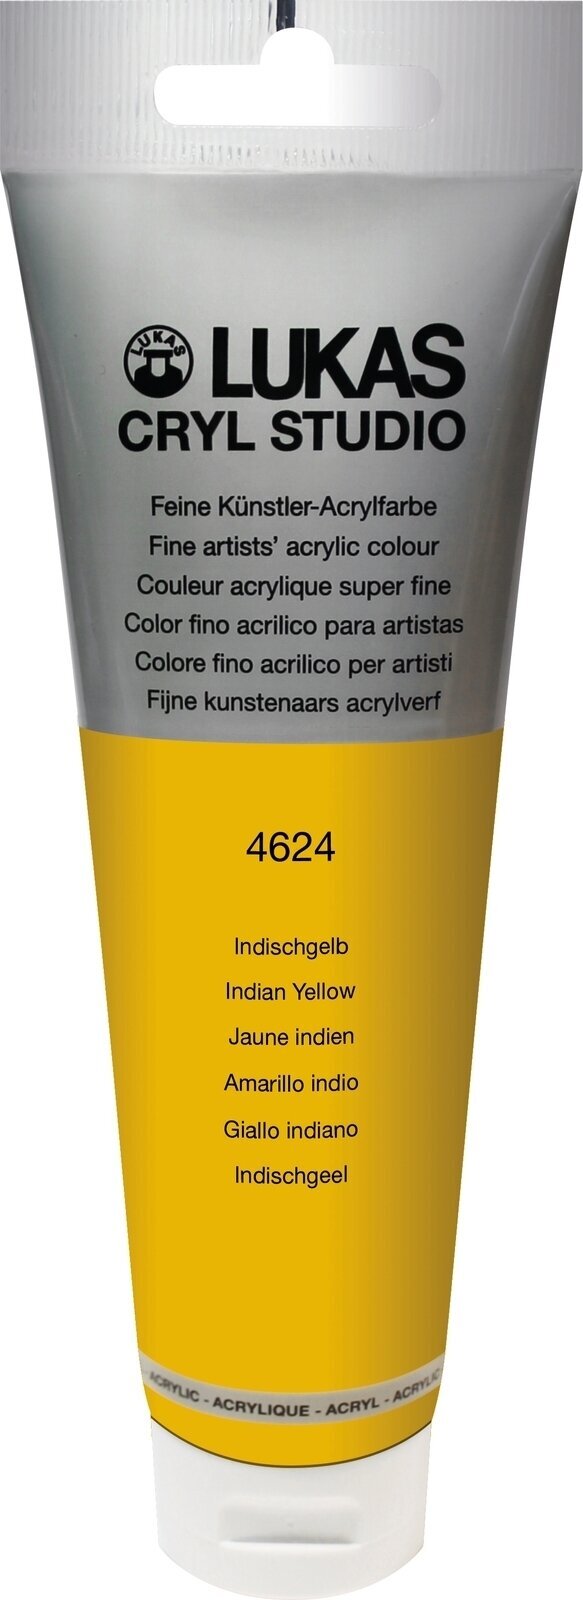 Acrylic Paint Lukas Cryl Studio Acrylic Paint 125 ml Indian Yellow